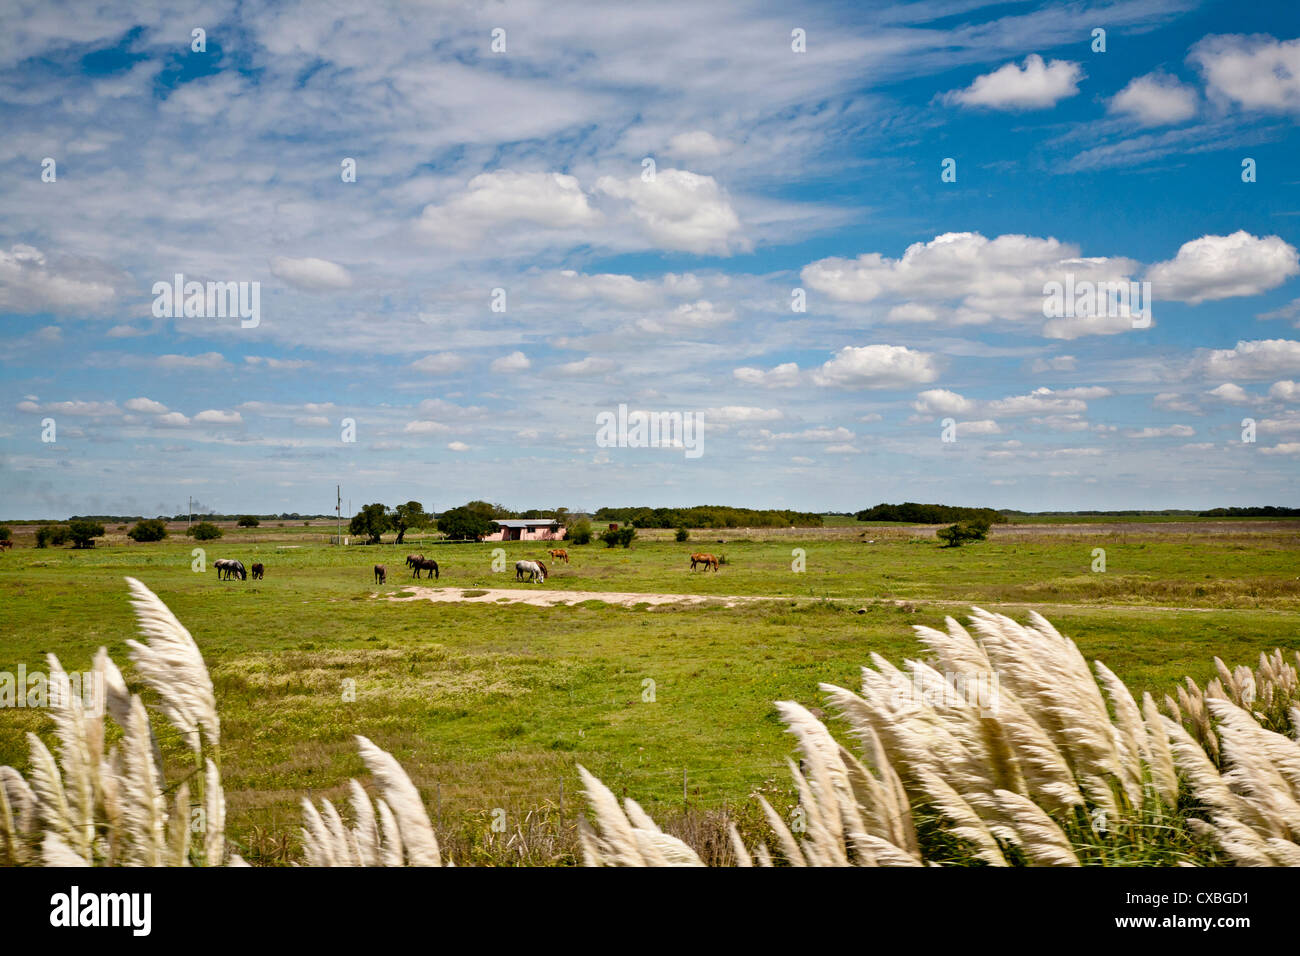 Typische Landschaft der Region Pampa, Argentinien. Stockfoto